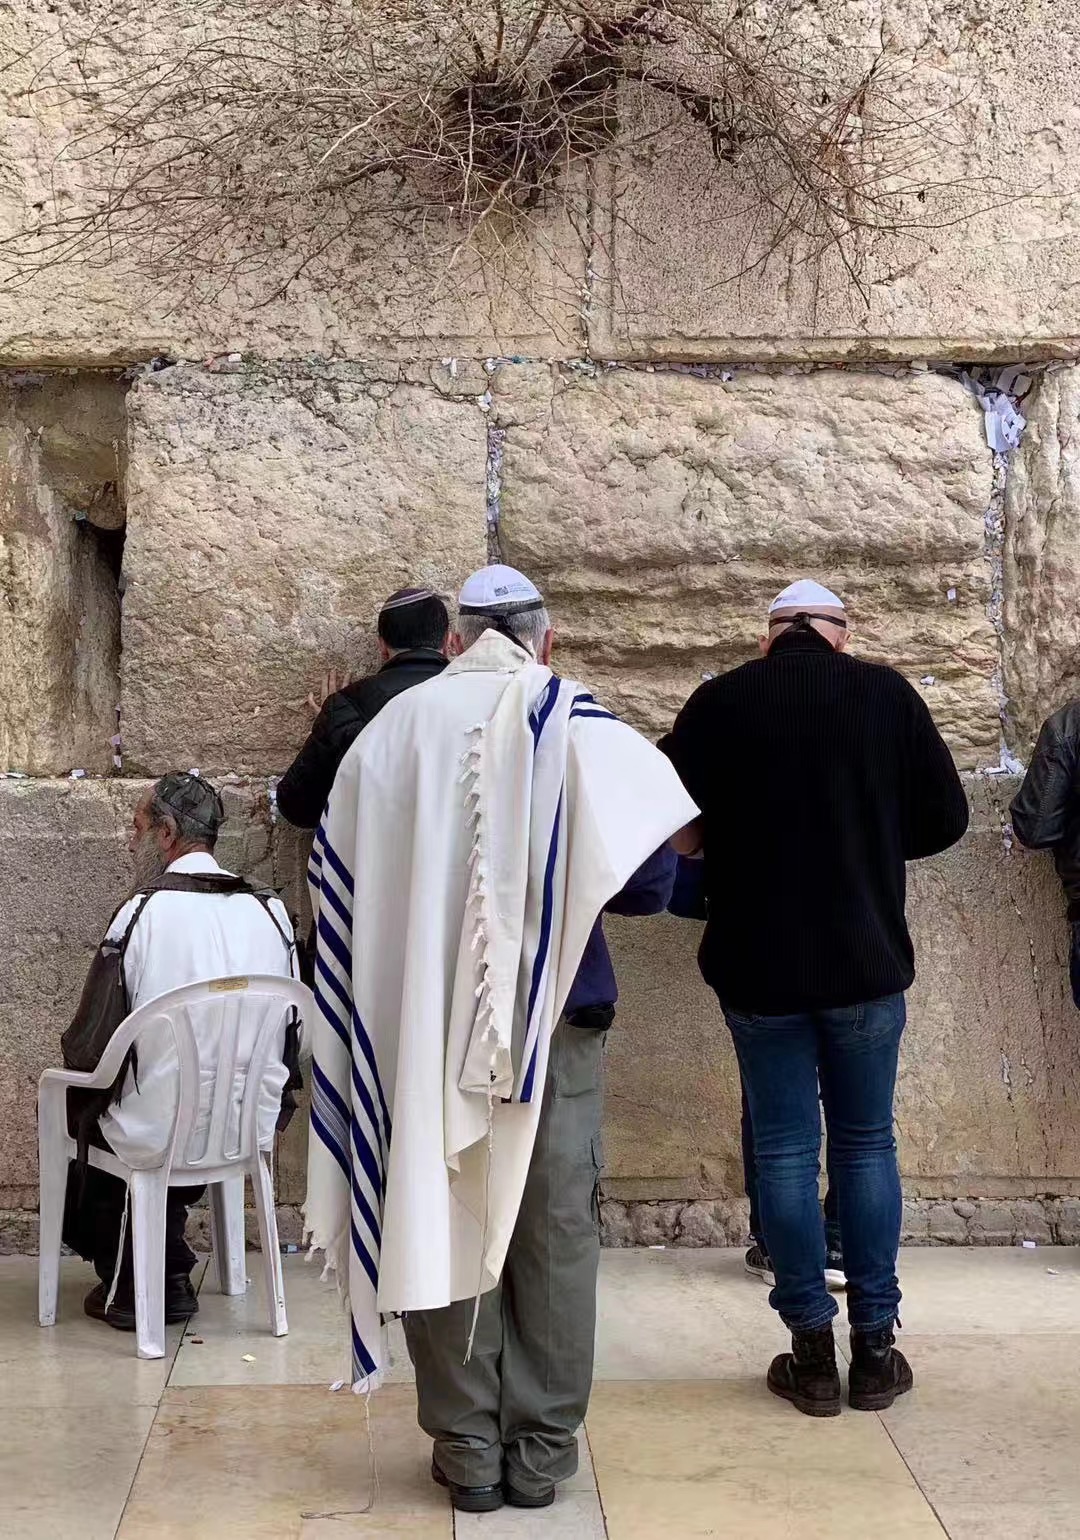 【携程攻略】耶路撒冷哭墙景点,这里是犹太人的精神圣地 哭墙下 在抽泣的犹太人身旁感受信…